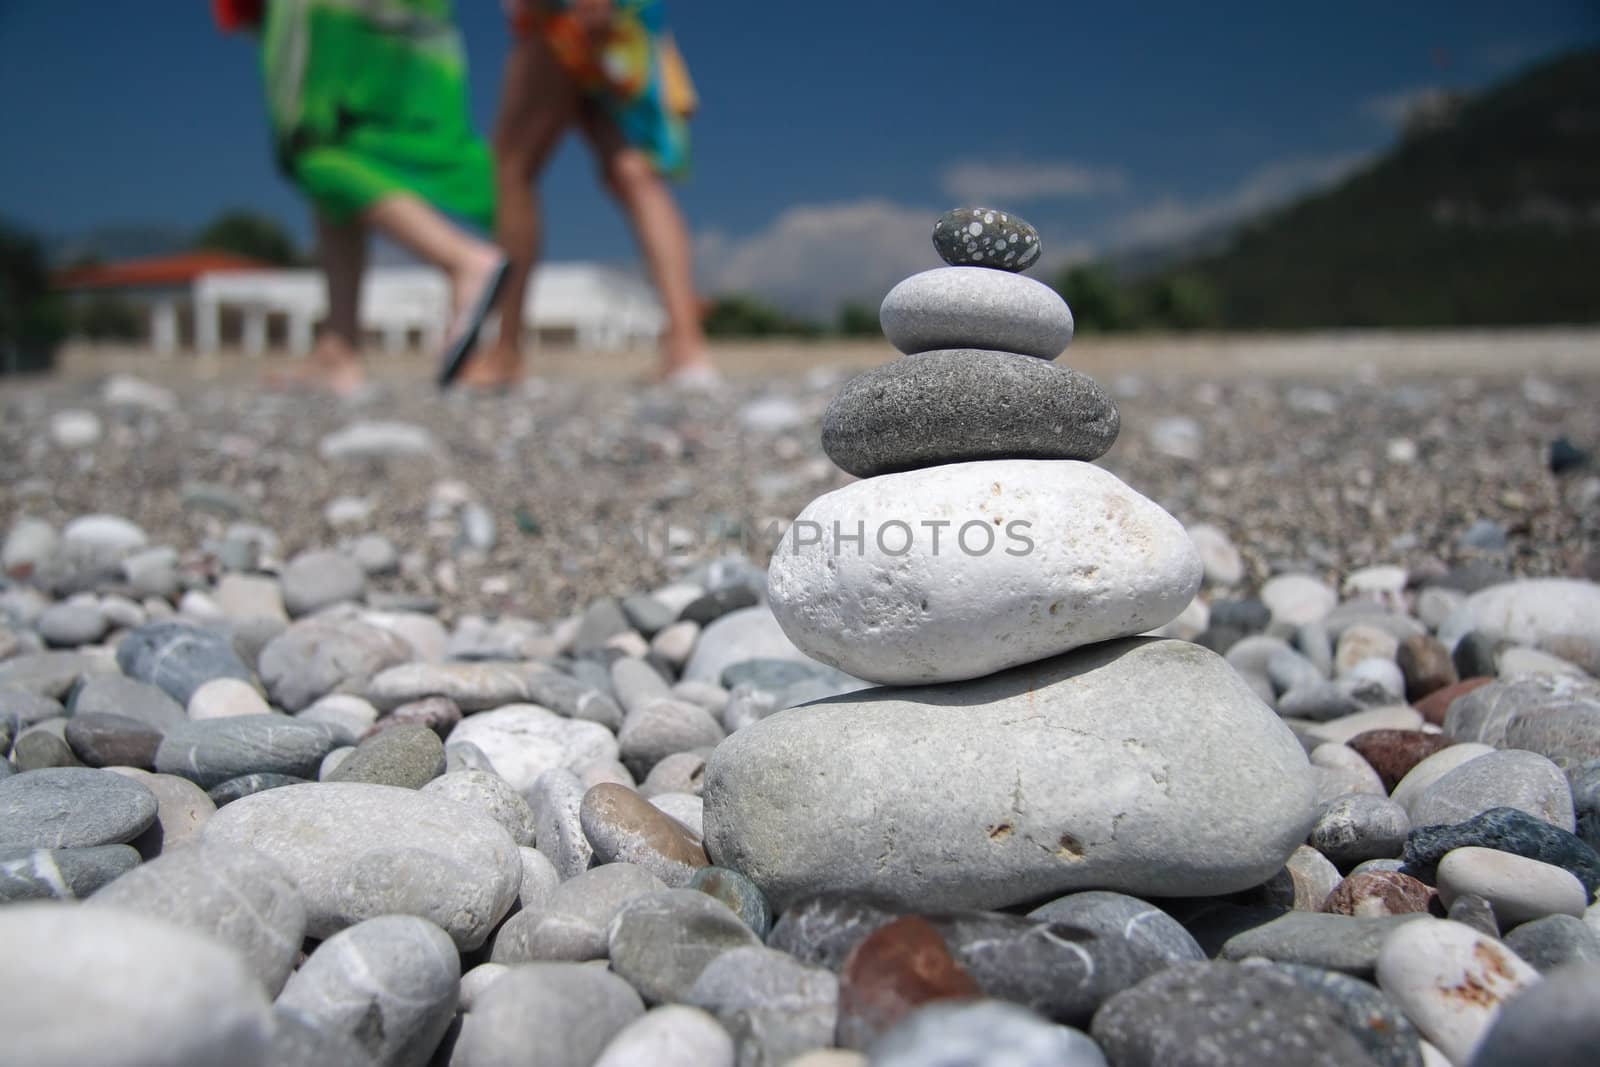 Stones on the beach by Kudryashka